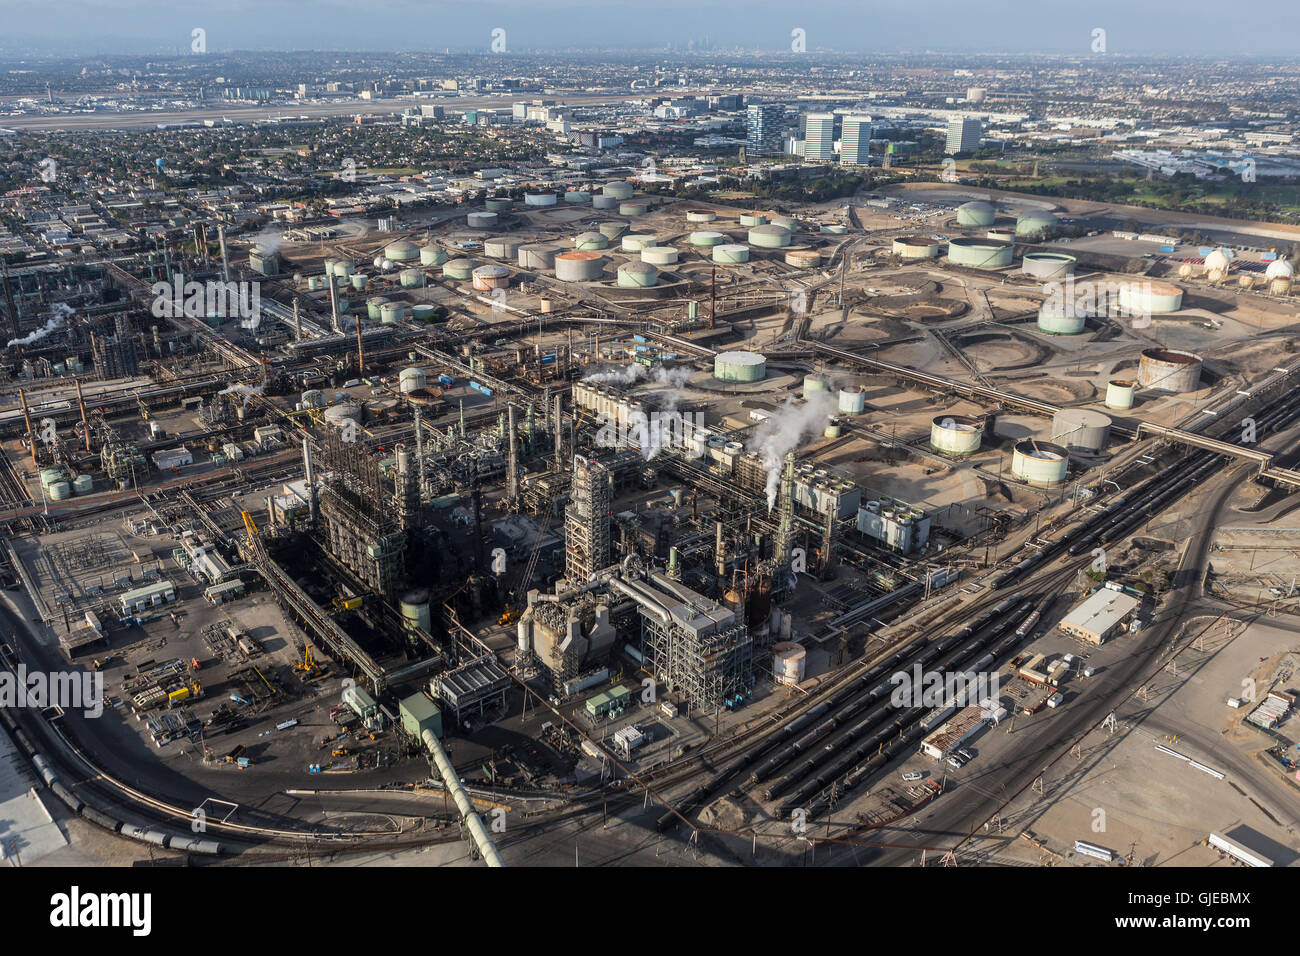 El Segundo, Kalifornien, USA - 6. August 2016: Luftaufnahme des großen dampfenden Öl-Raffinerie in der Nähe von Los Angeles. Stockfoto